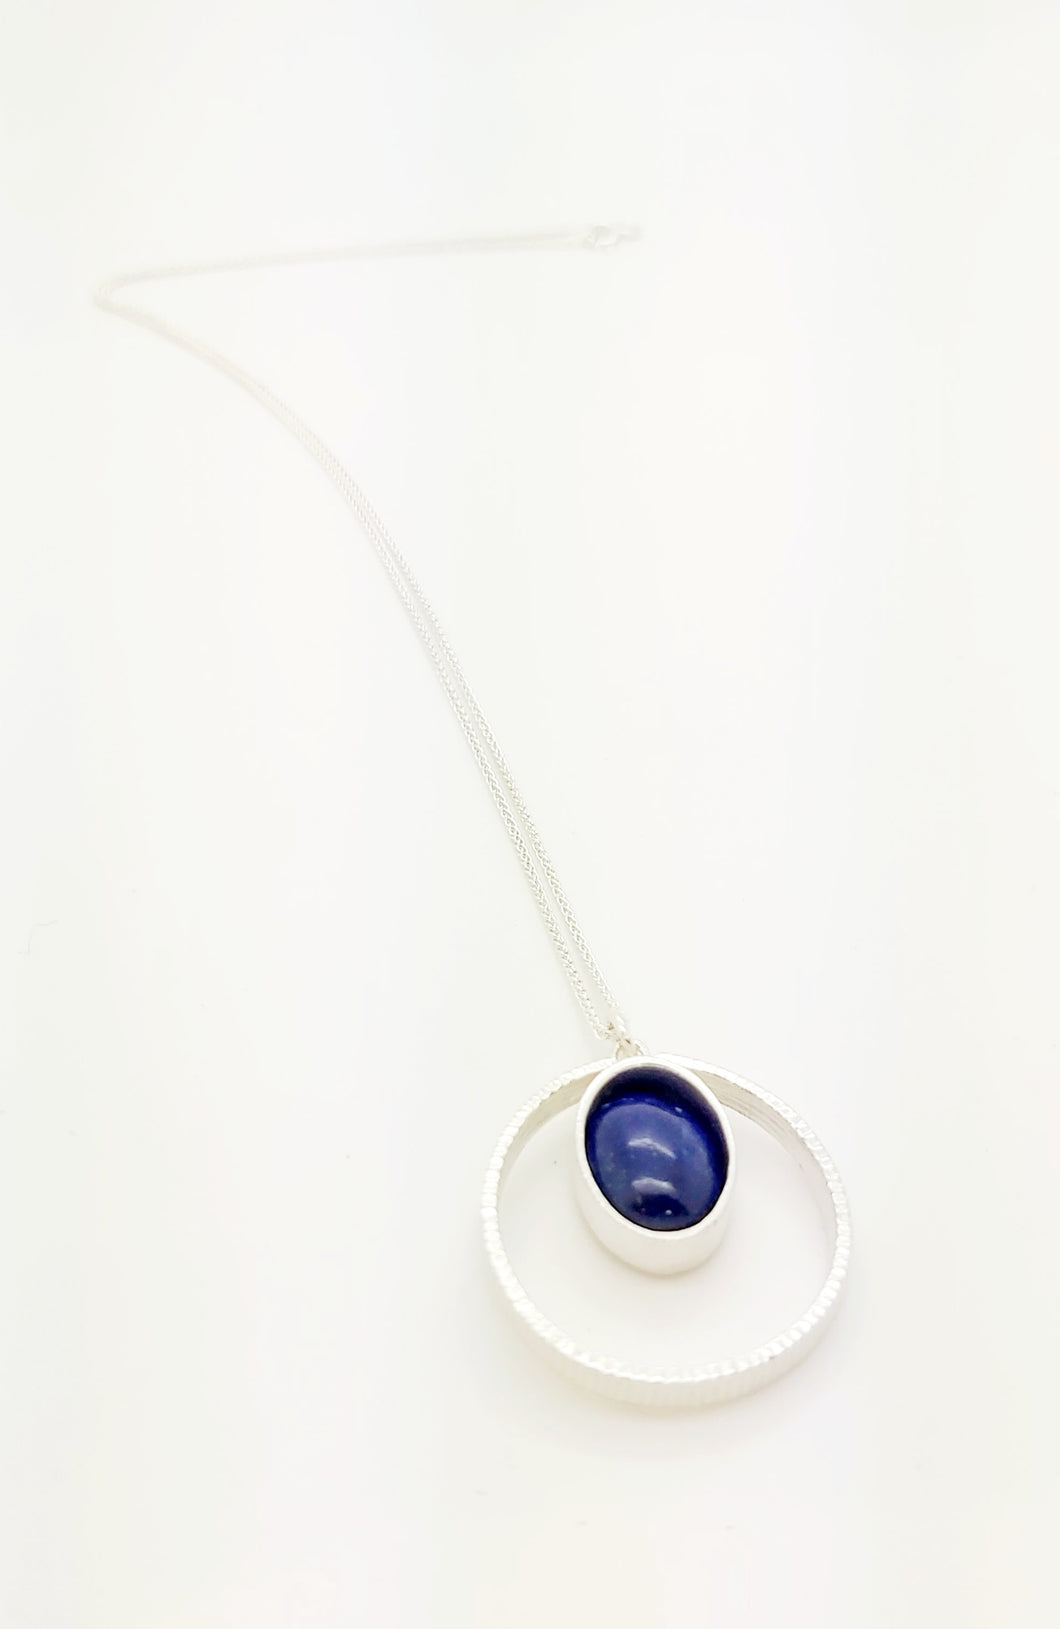 Pendentif Cercle sur Chaîne 18'' (45cm) en Argent 925 (Sterling) et Pierre de Lapis Lazuli Inspiration Style Rétro Design moderne épuré ajouré géométrique